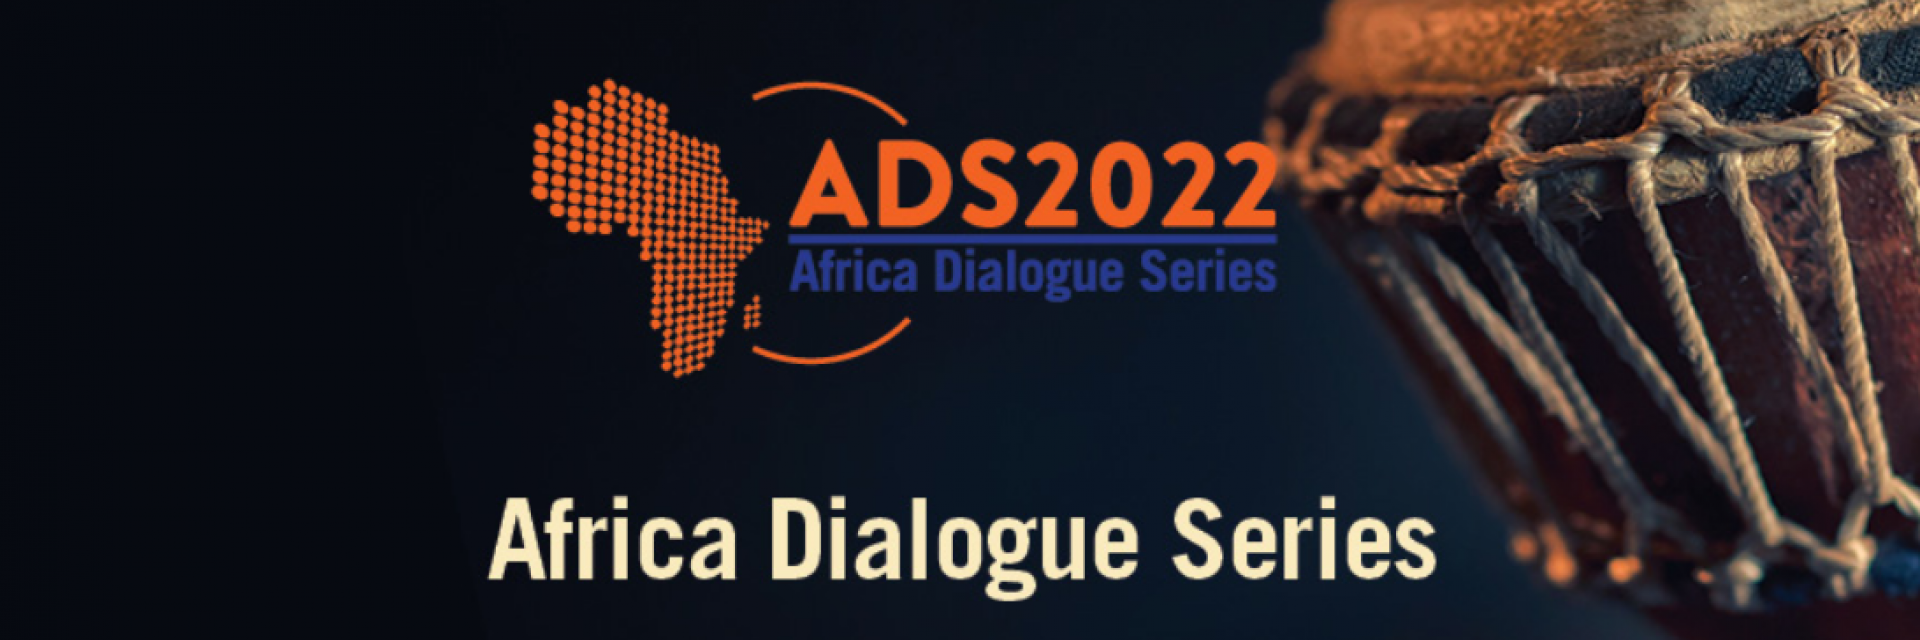 Africa Dialogue Series 2022